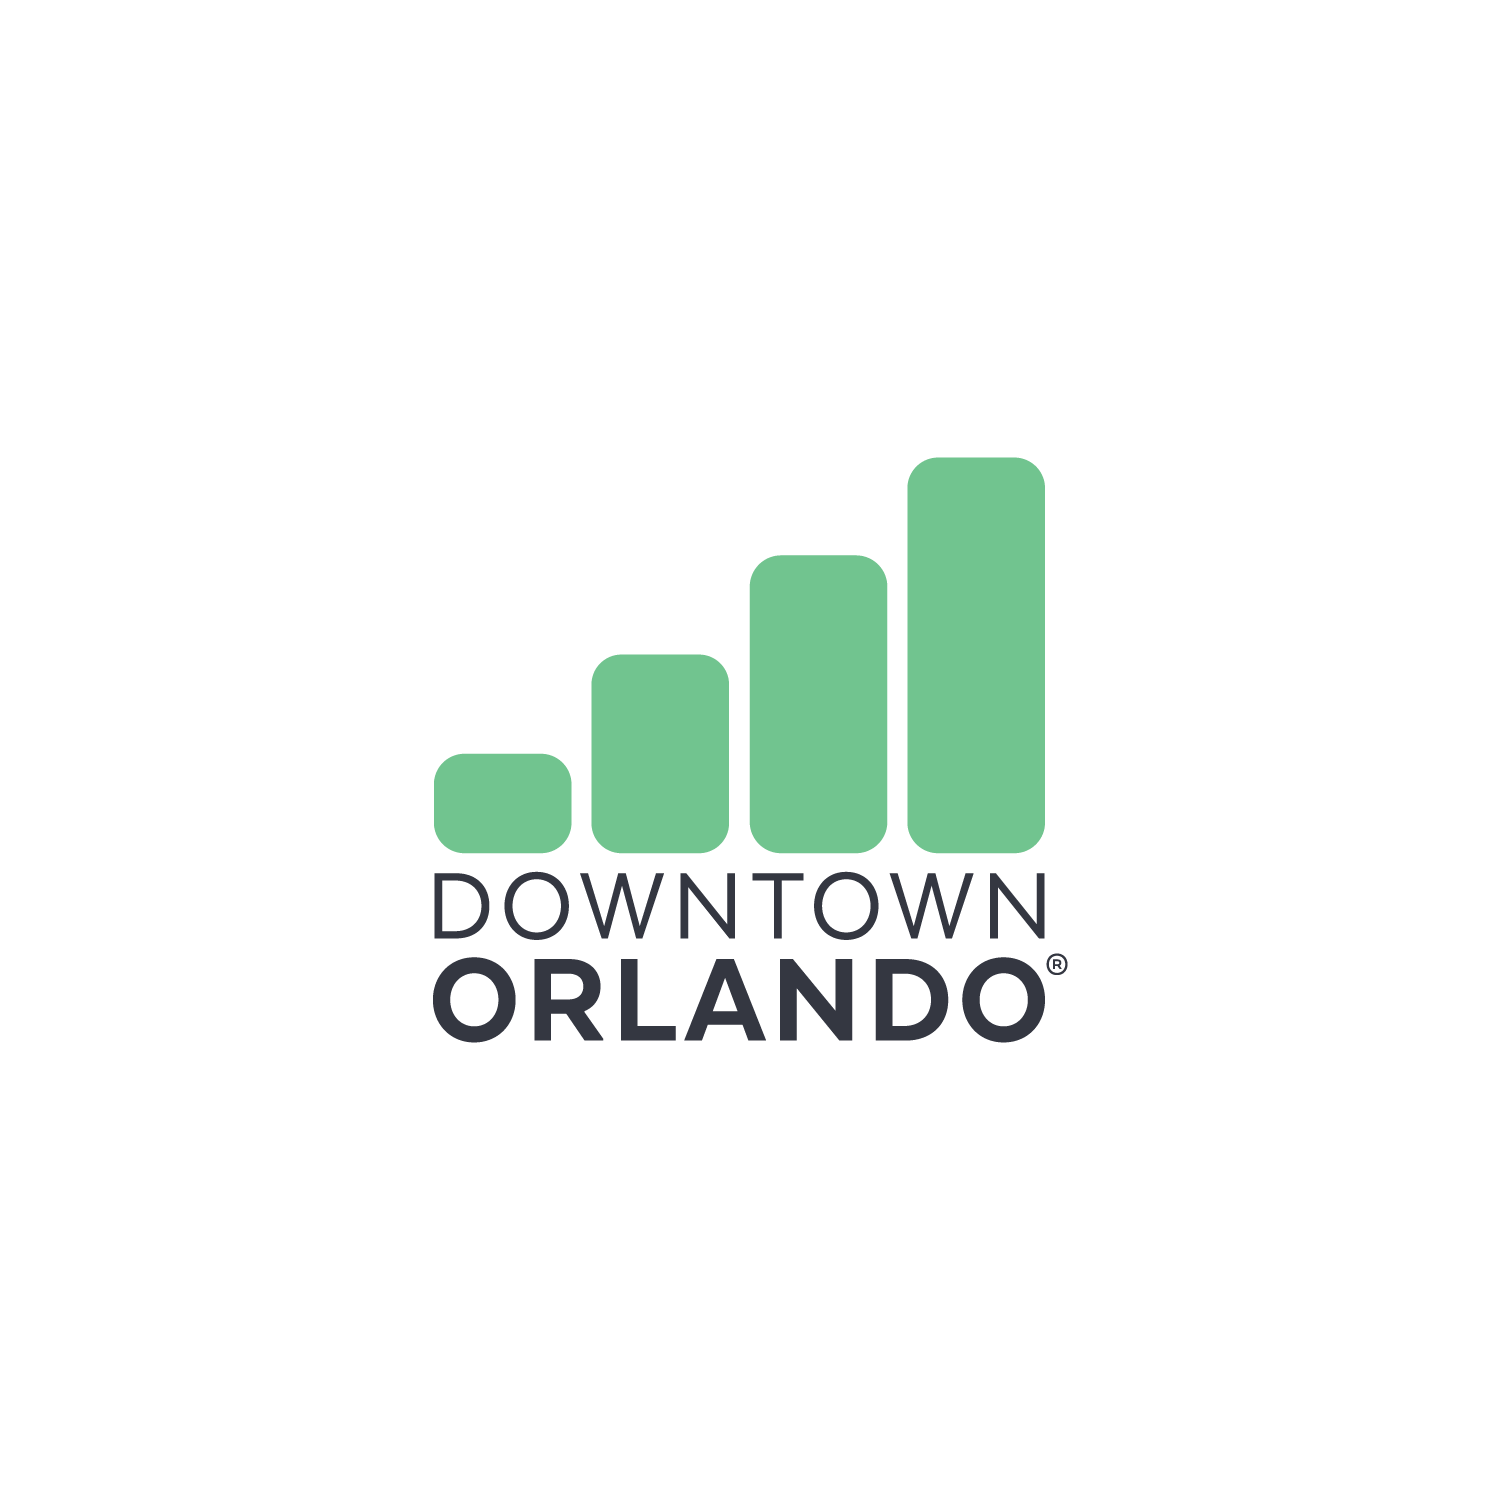 Downtown Orlando logo